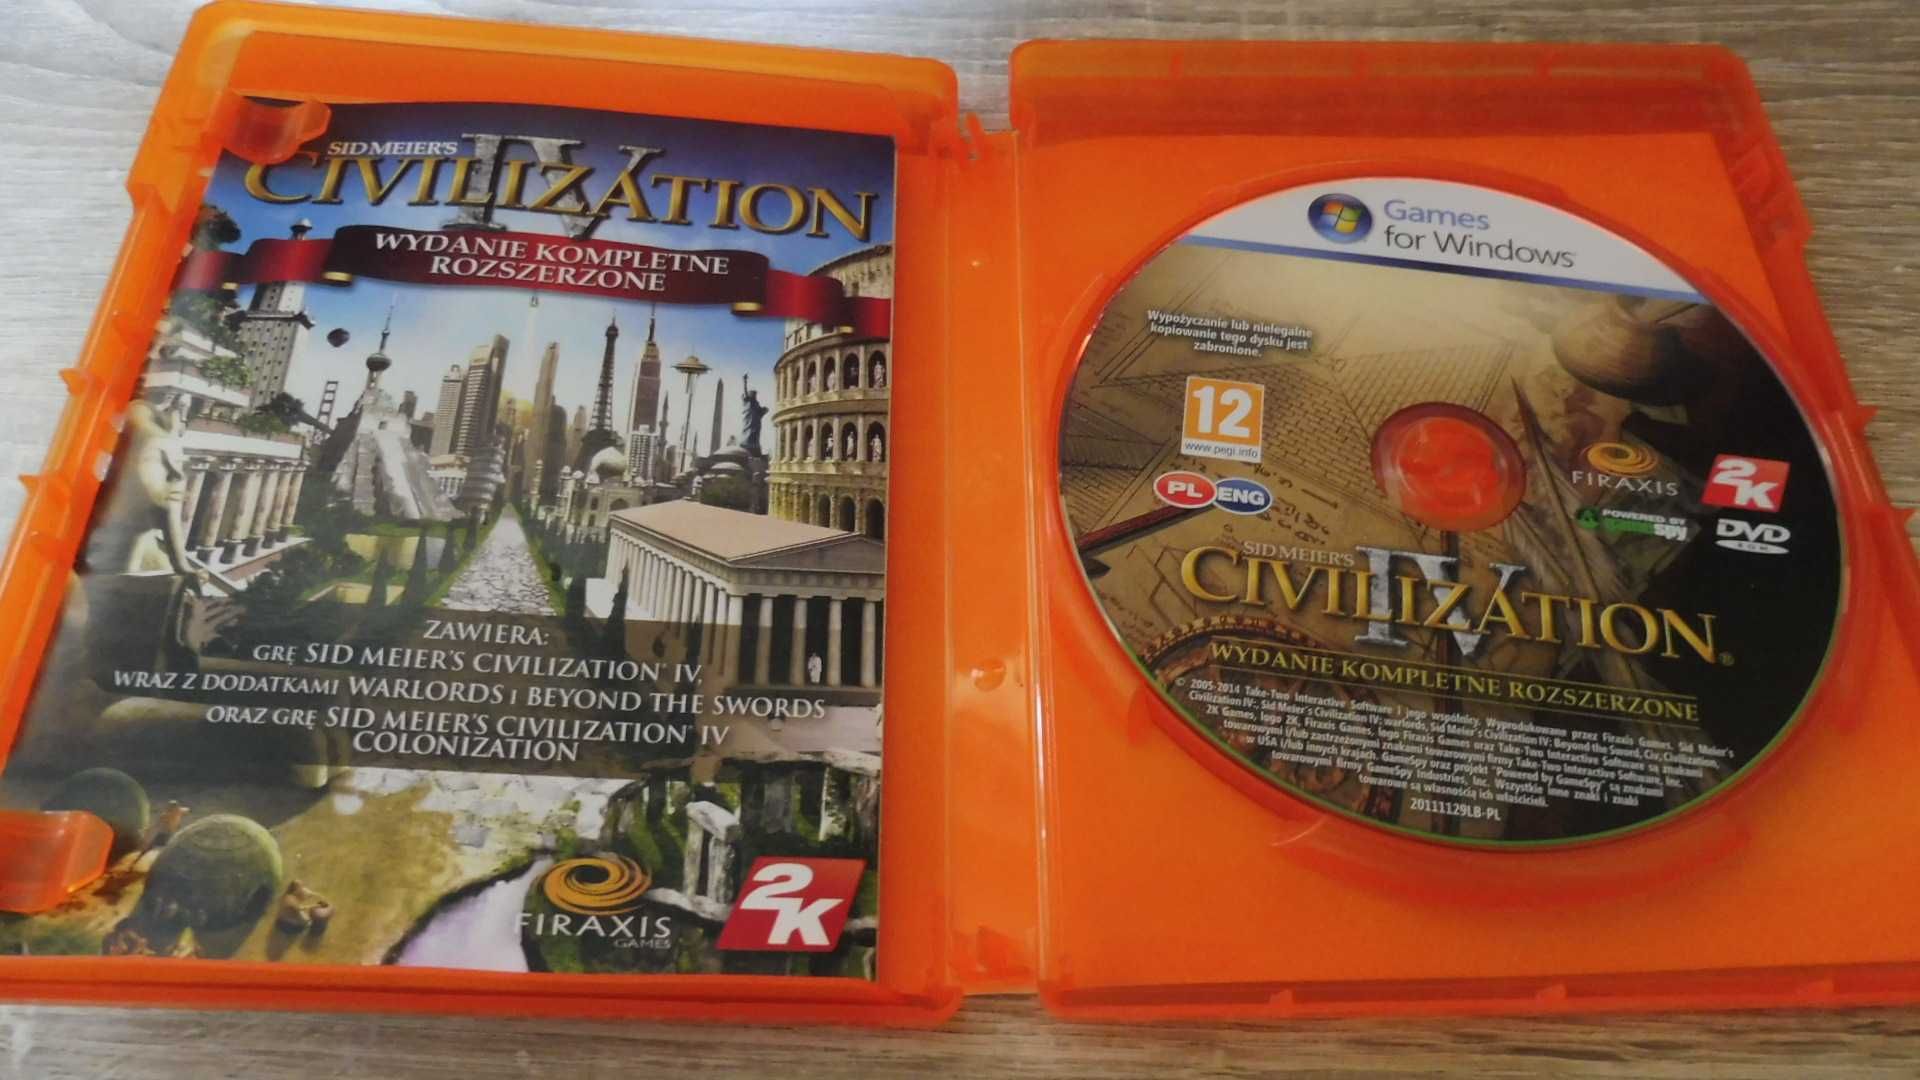 Civilization IV - Wydanie kompletne rozszerzone - Kolekcja klasyki -PL